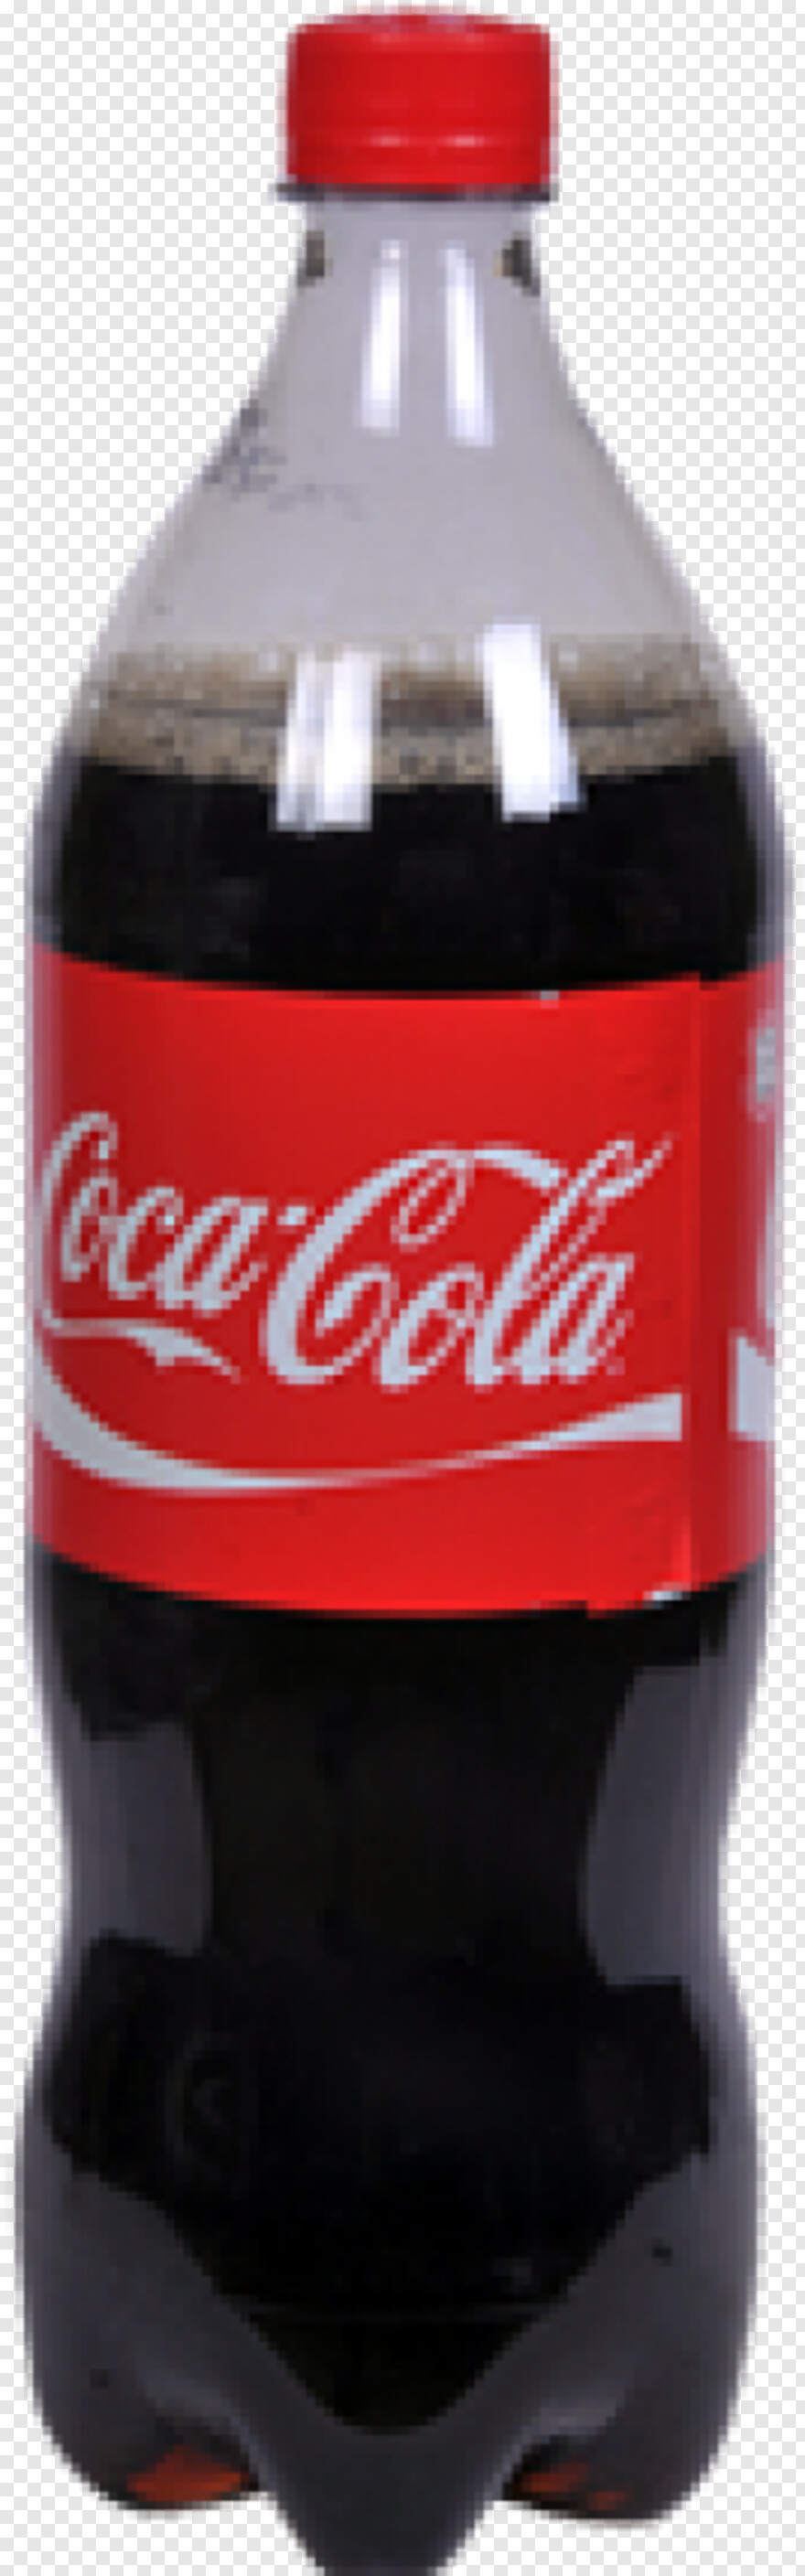 coke-bottle # 325246